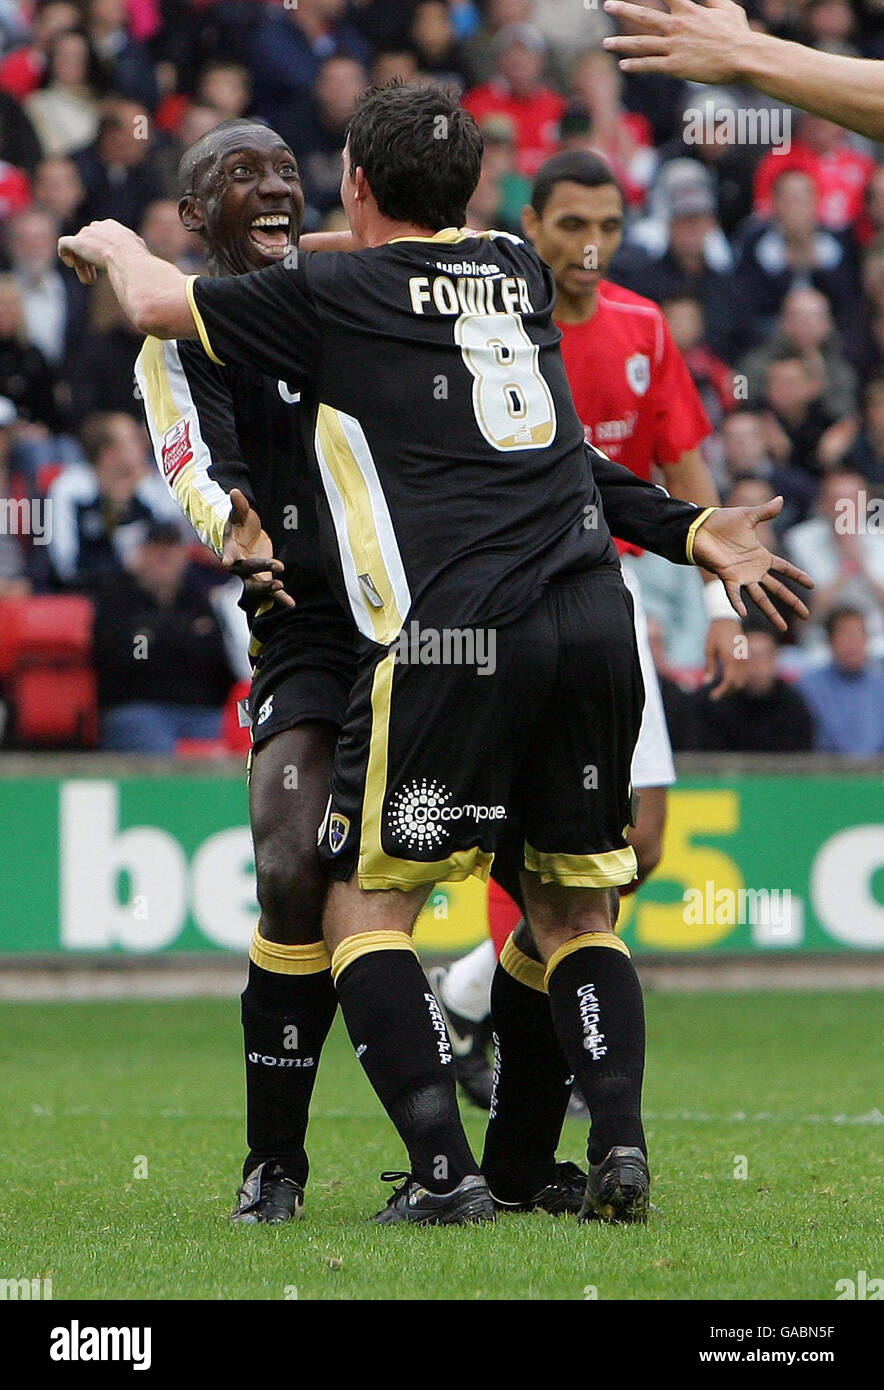 Jimmy Floyd Hasselbaink, de Cardiff City, célèbre son but avec Robbie Fowler lors du match de championnat de la ligue de football Coca-Cola à l'Oakwell Ground, Barnsley. Banque D'Images